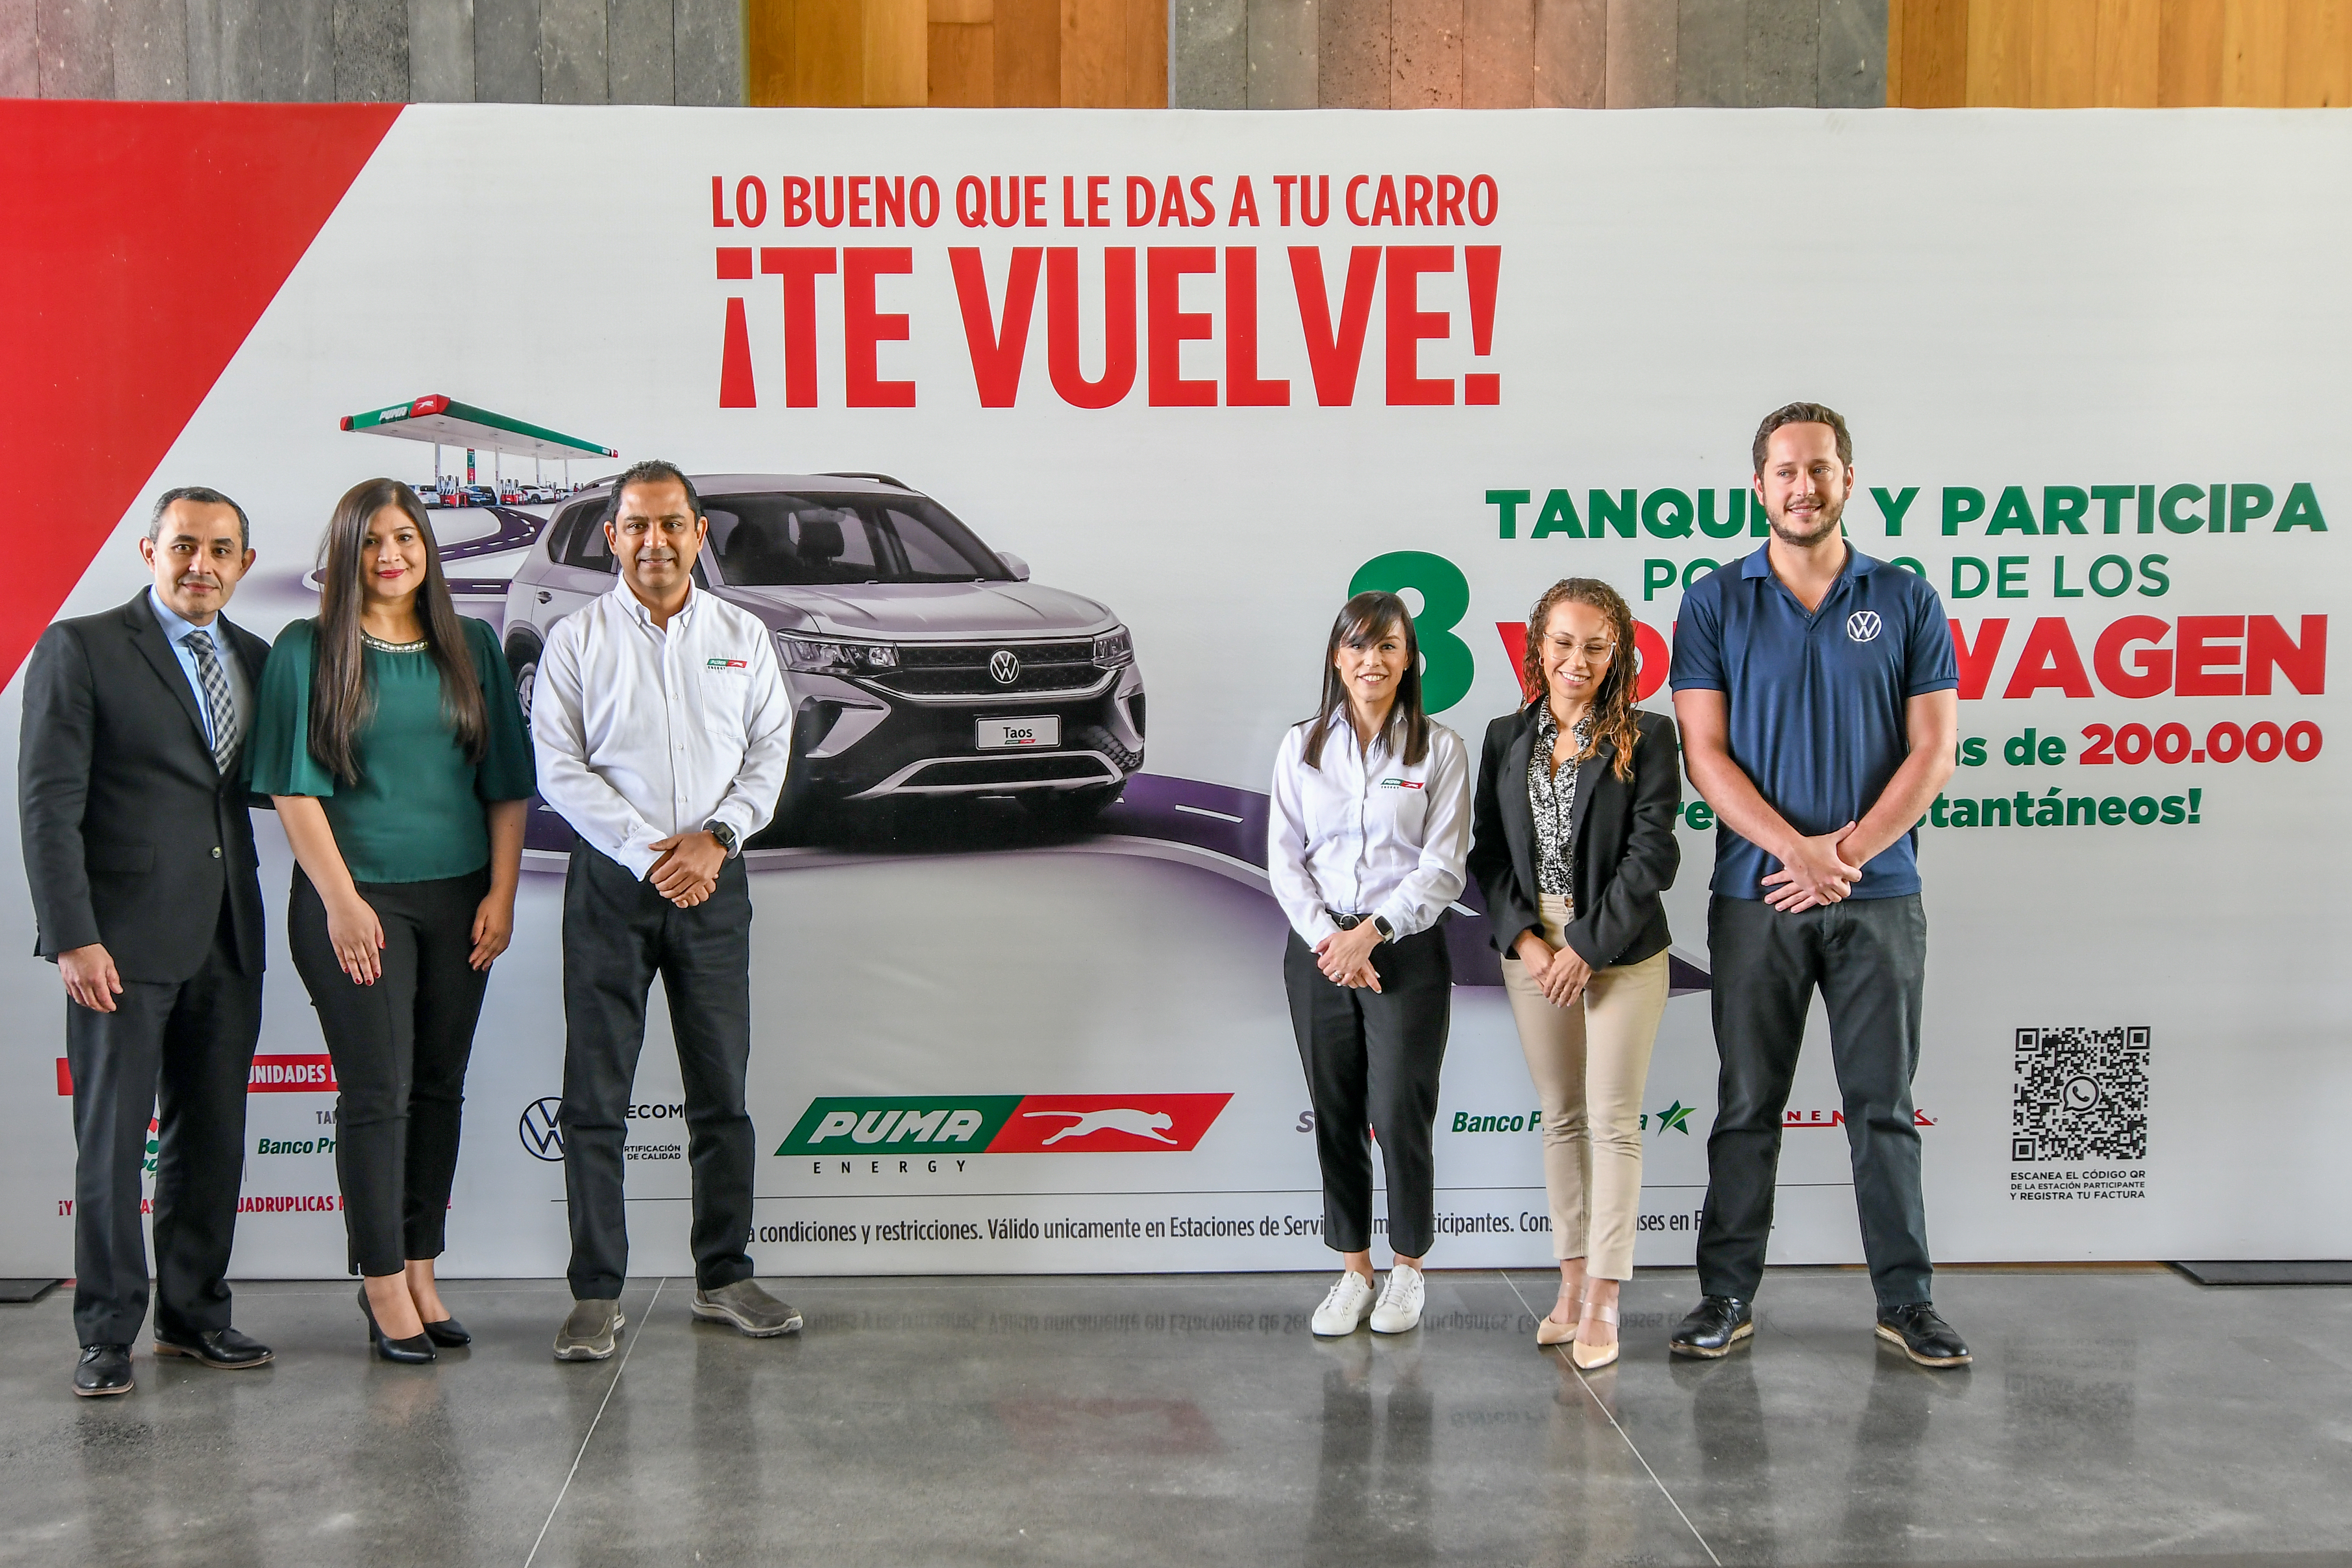 Ejecutivos de Puma Energy Guatemala y patrocinadores presentaron la millonaria promoción. Foto Prensa Libre: Sergio Muñoz